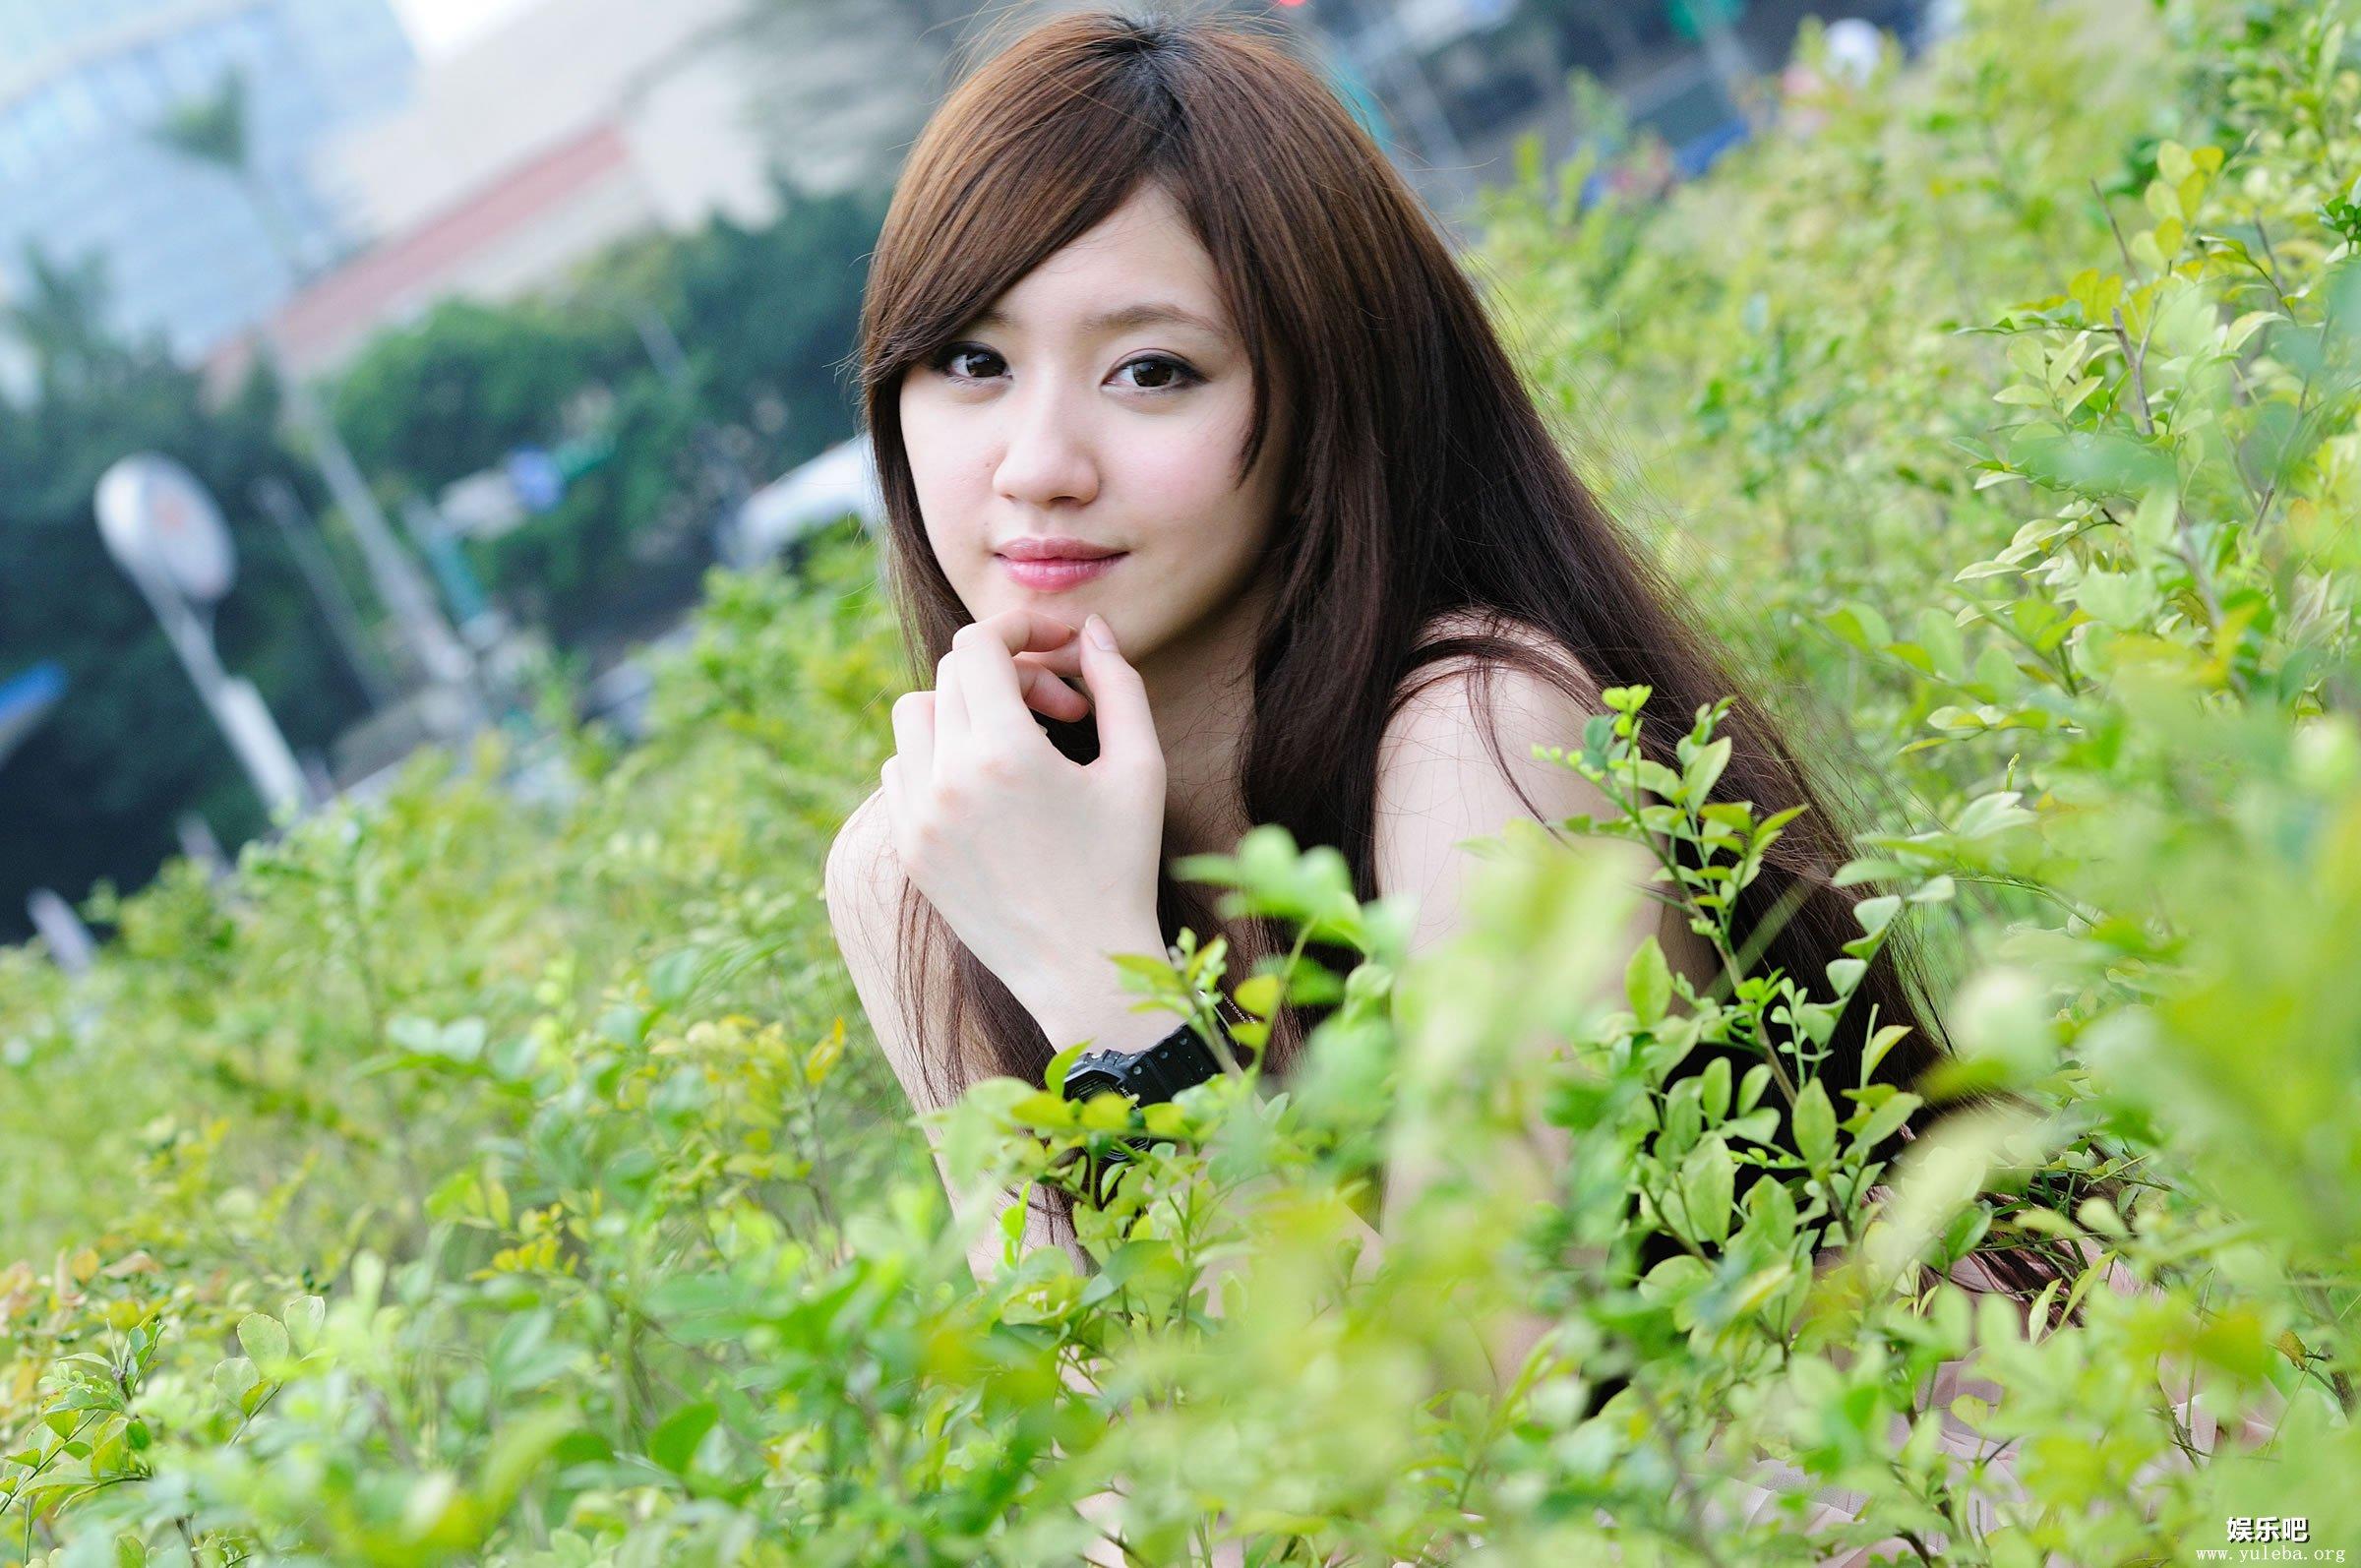 台湾清纯美女小雅草丛中外拍写真,台湾清纯美女小雅草丛中外拍写真